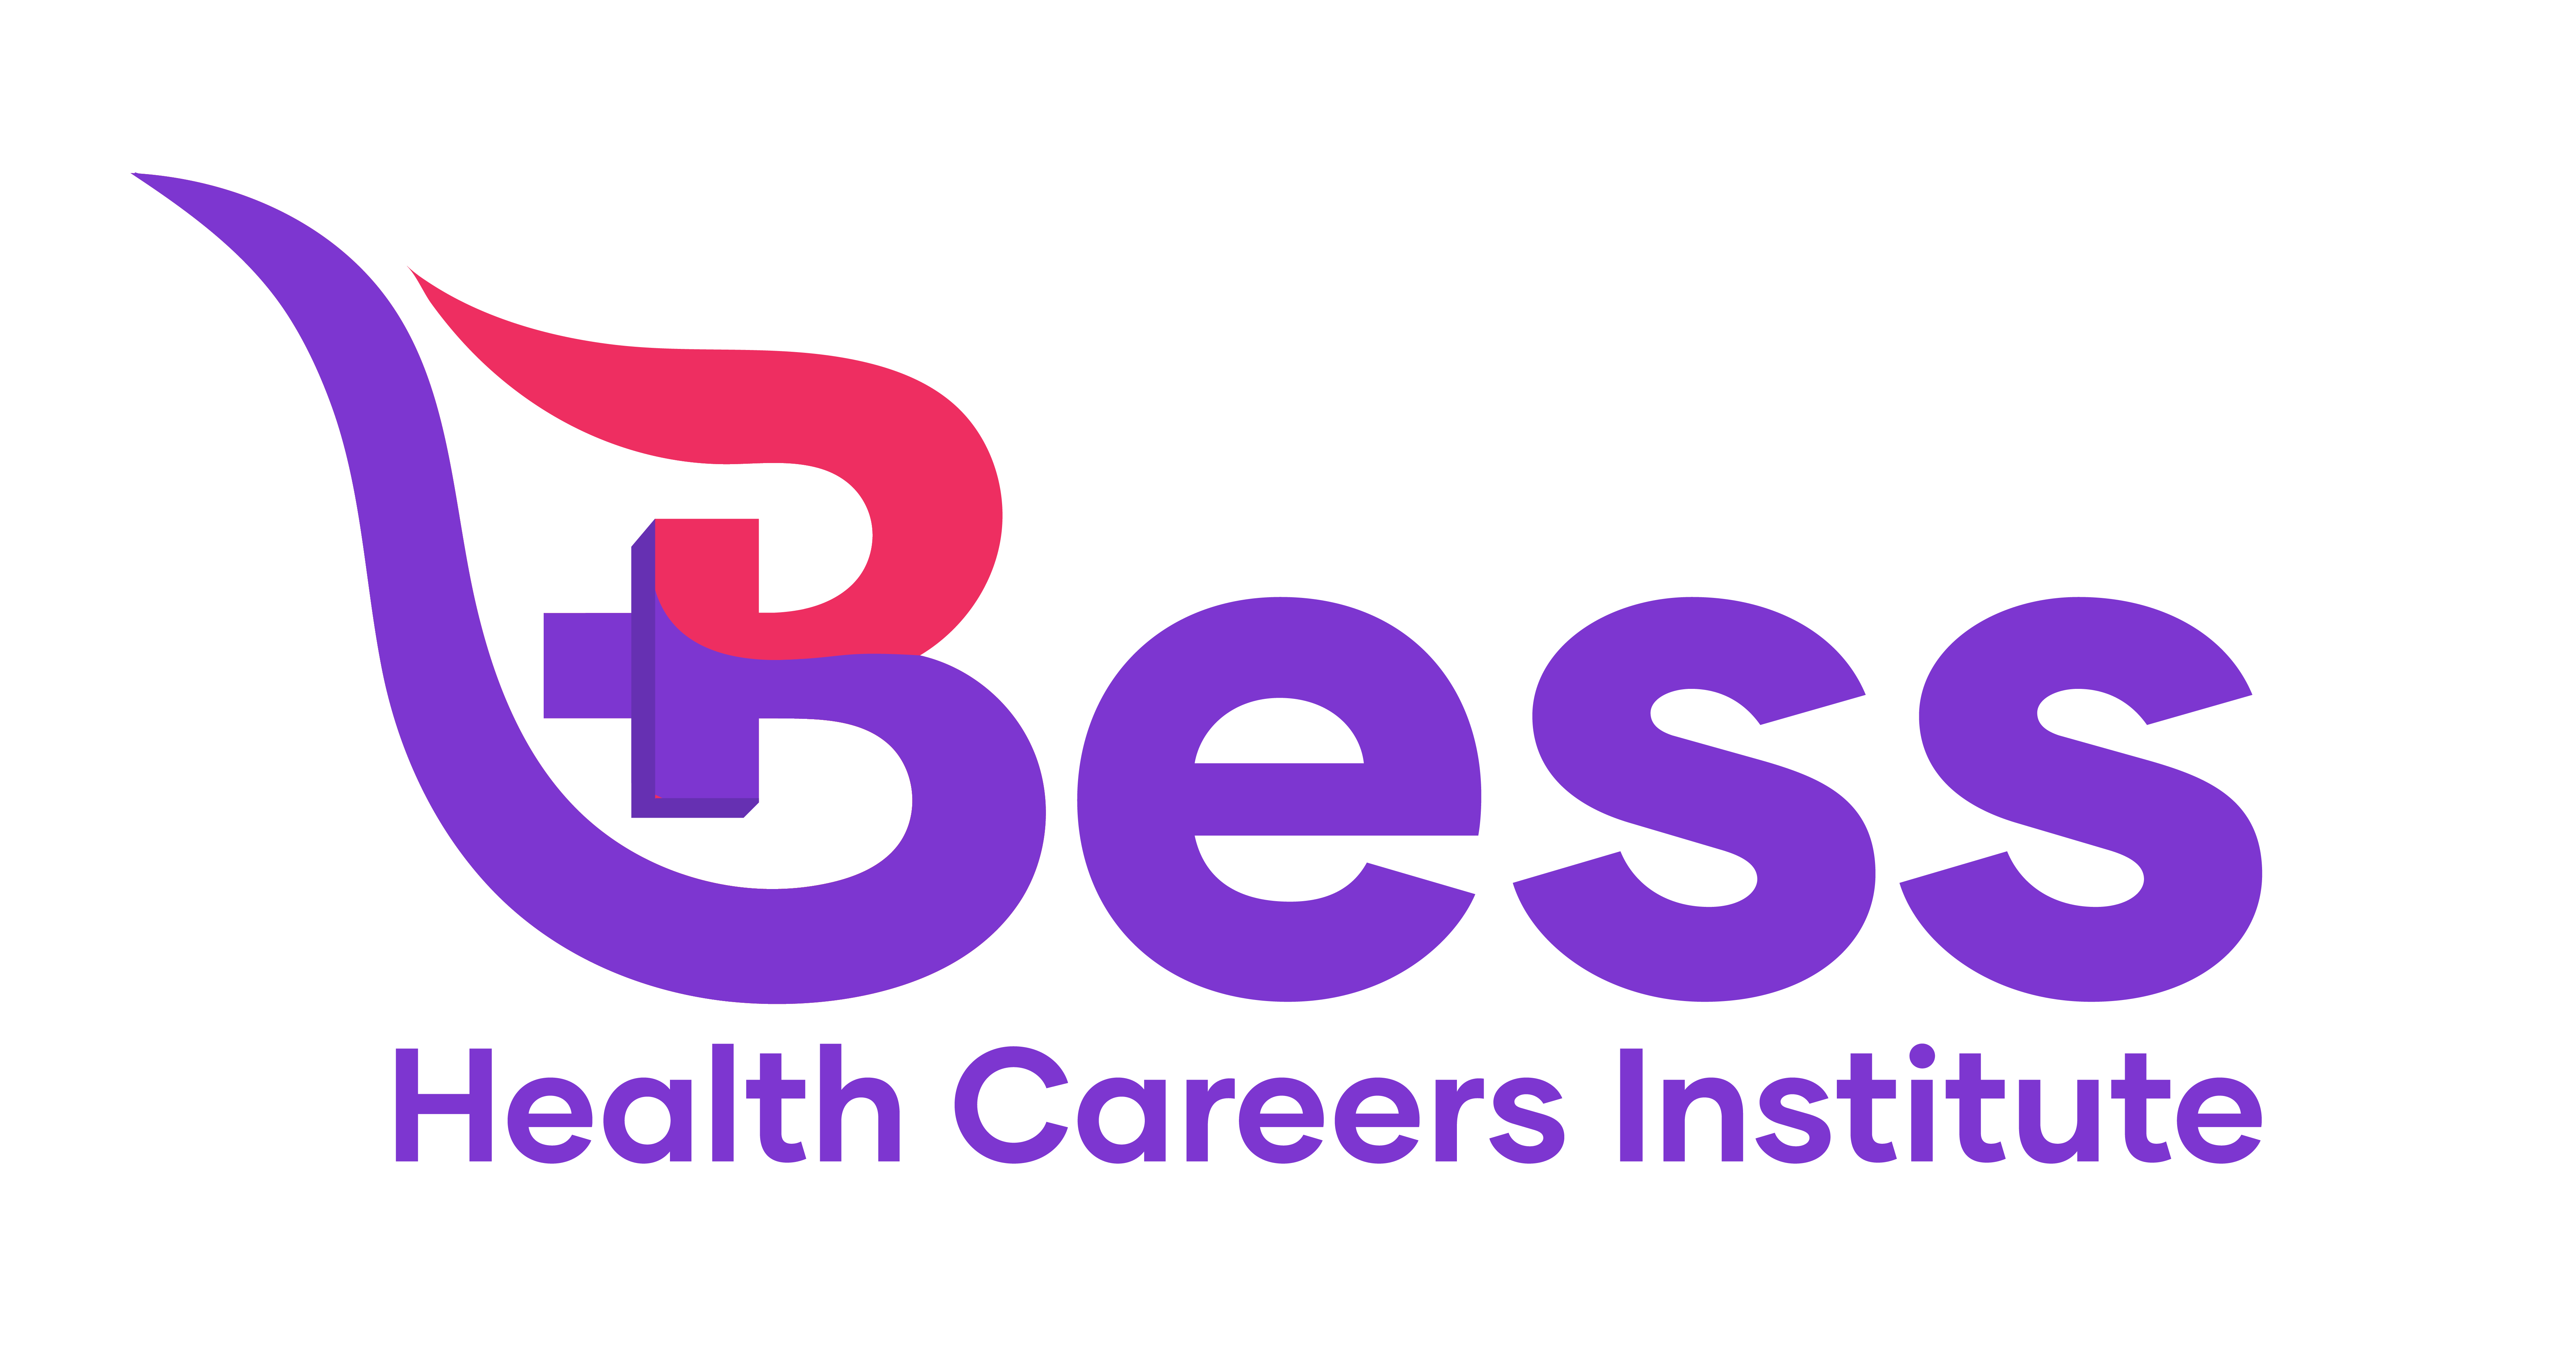 Bess Health Careers Institute